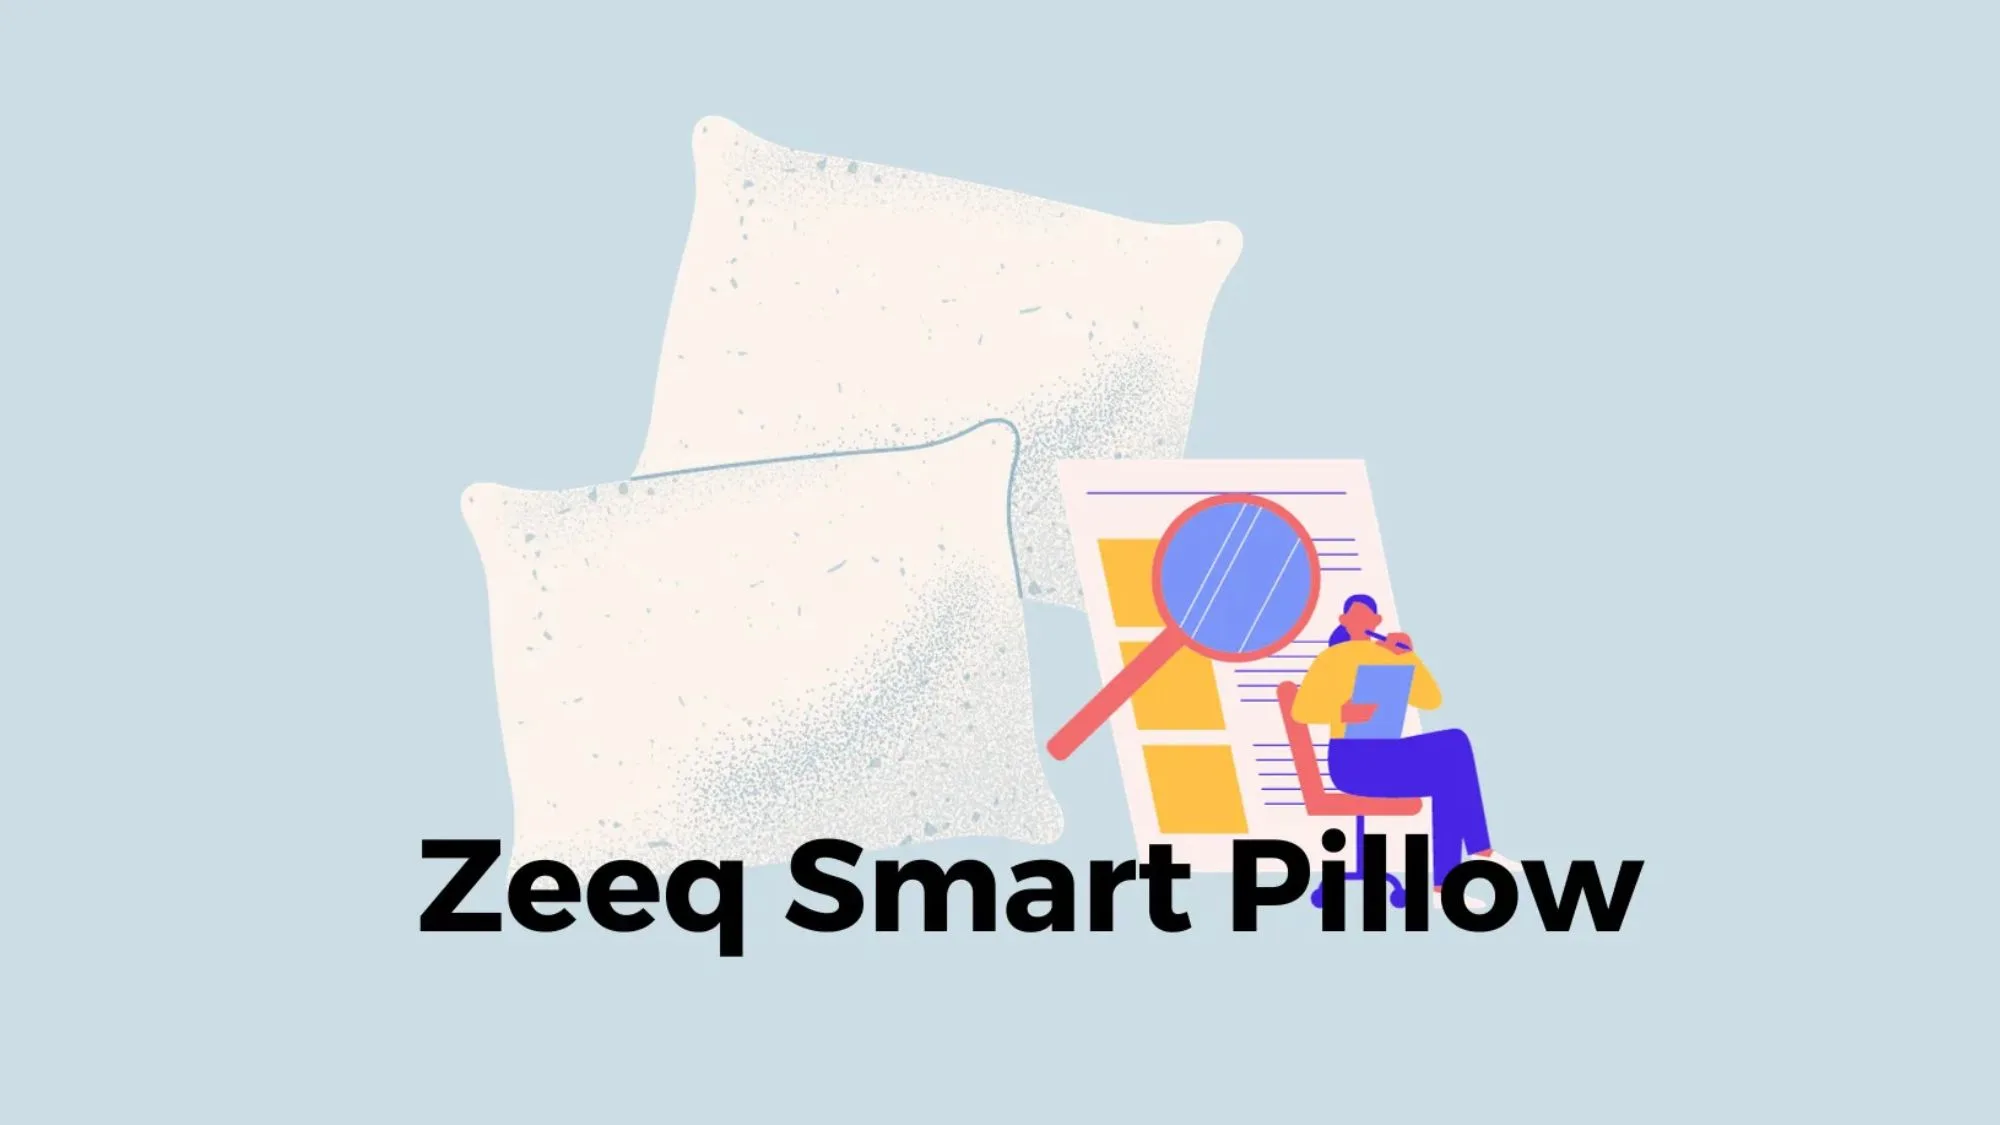 zeeq smart pillow